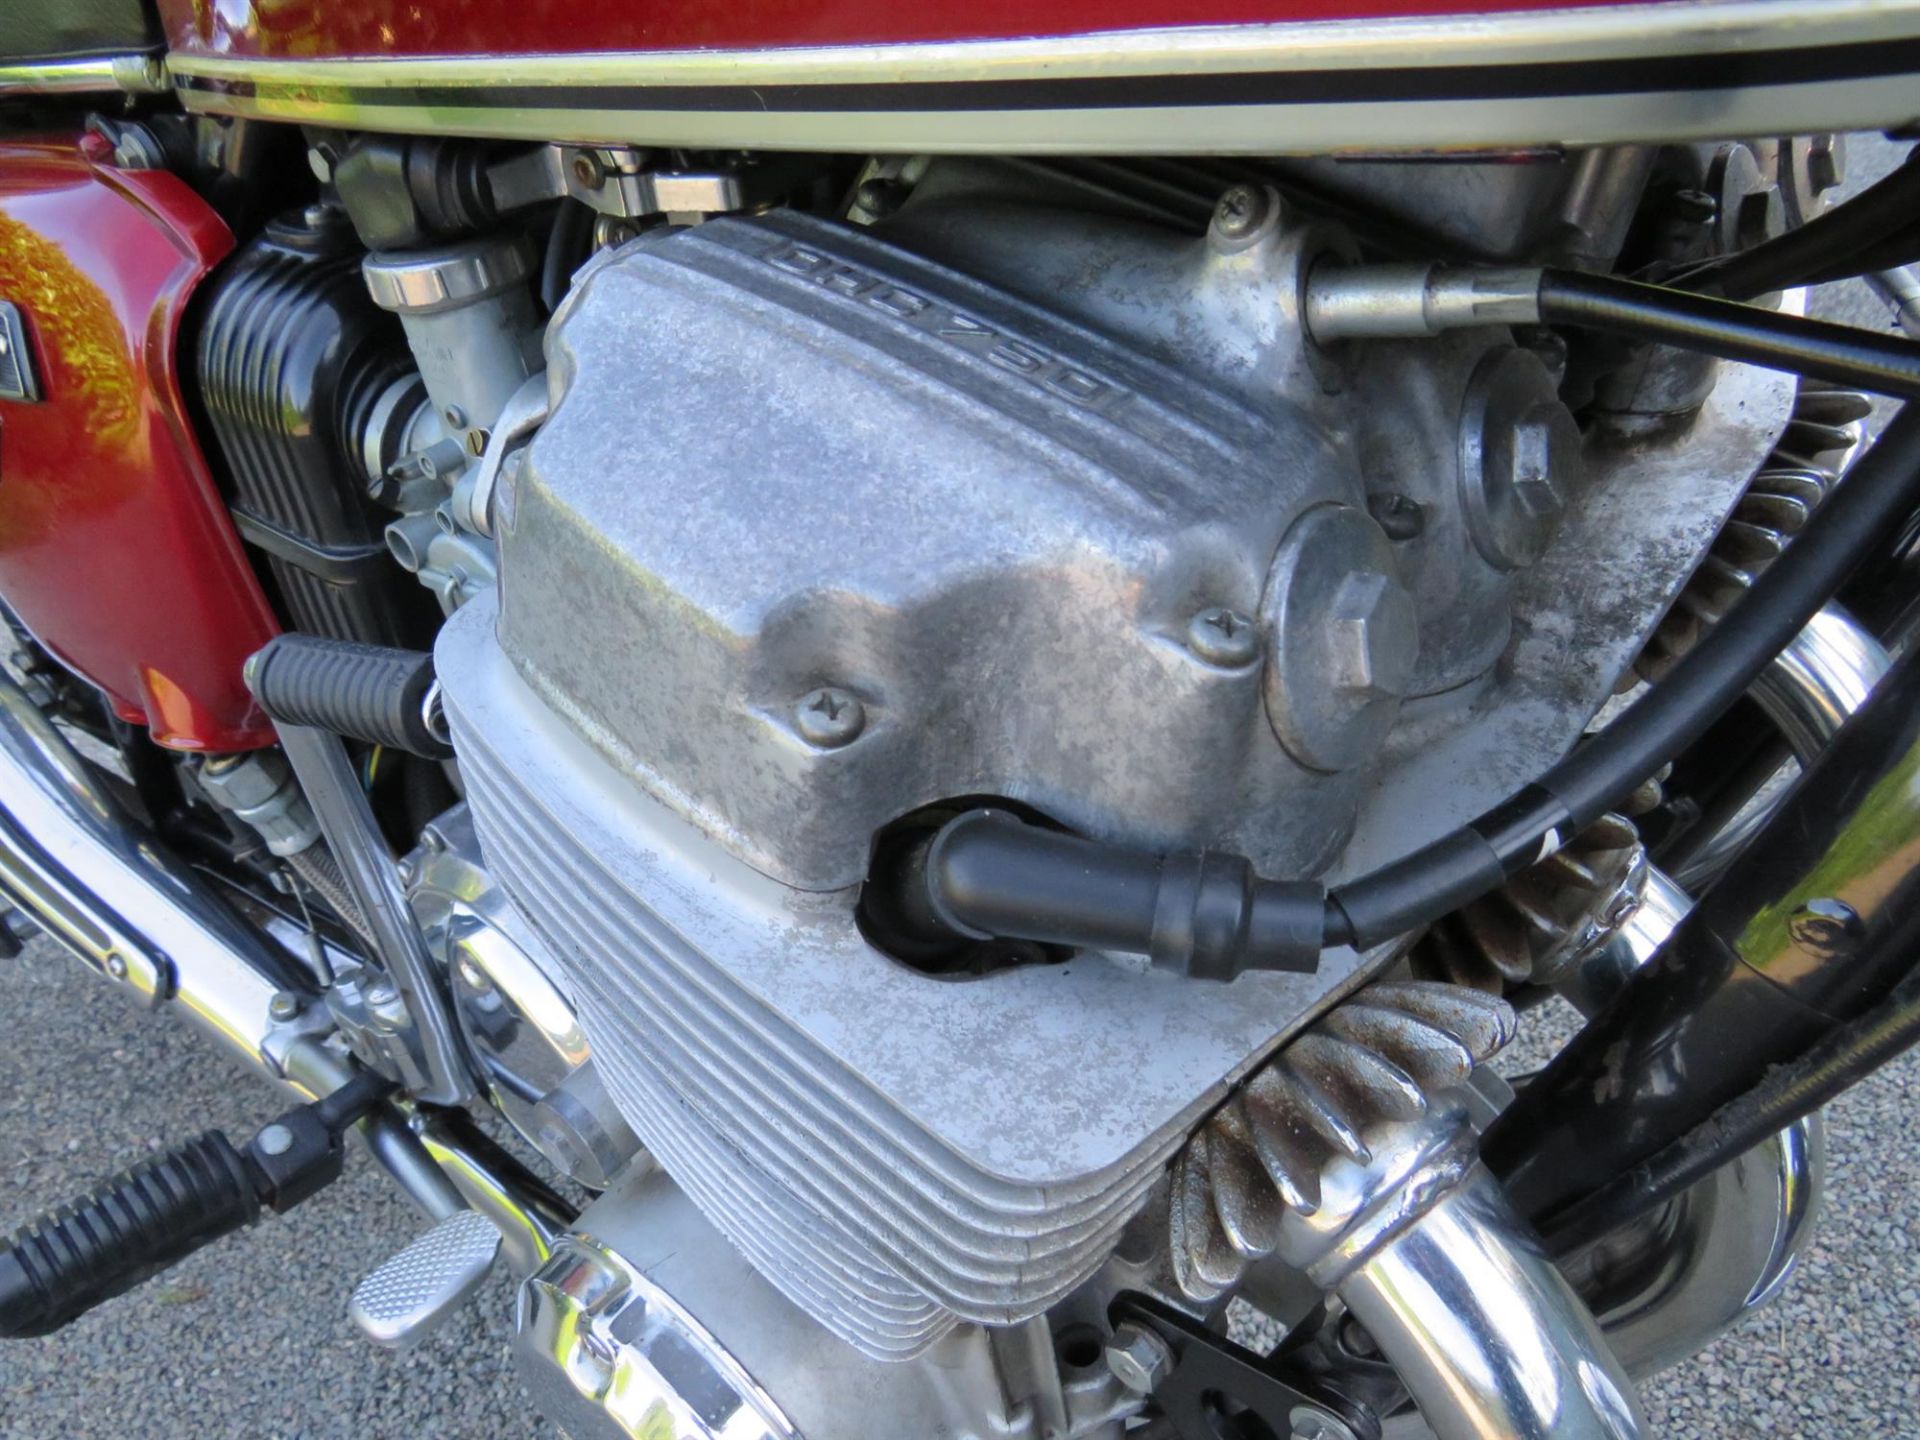 1976 Honda CB750 Four (K6) 736cc - Image 7 of 10